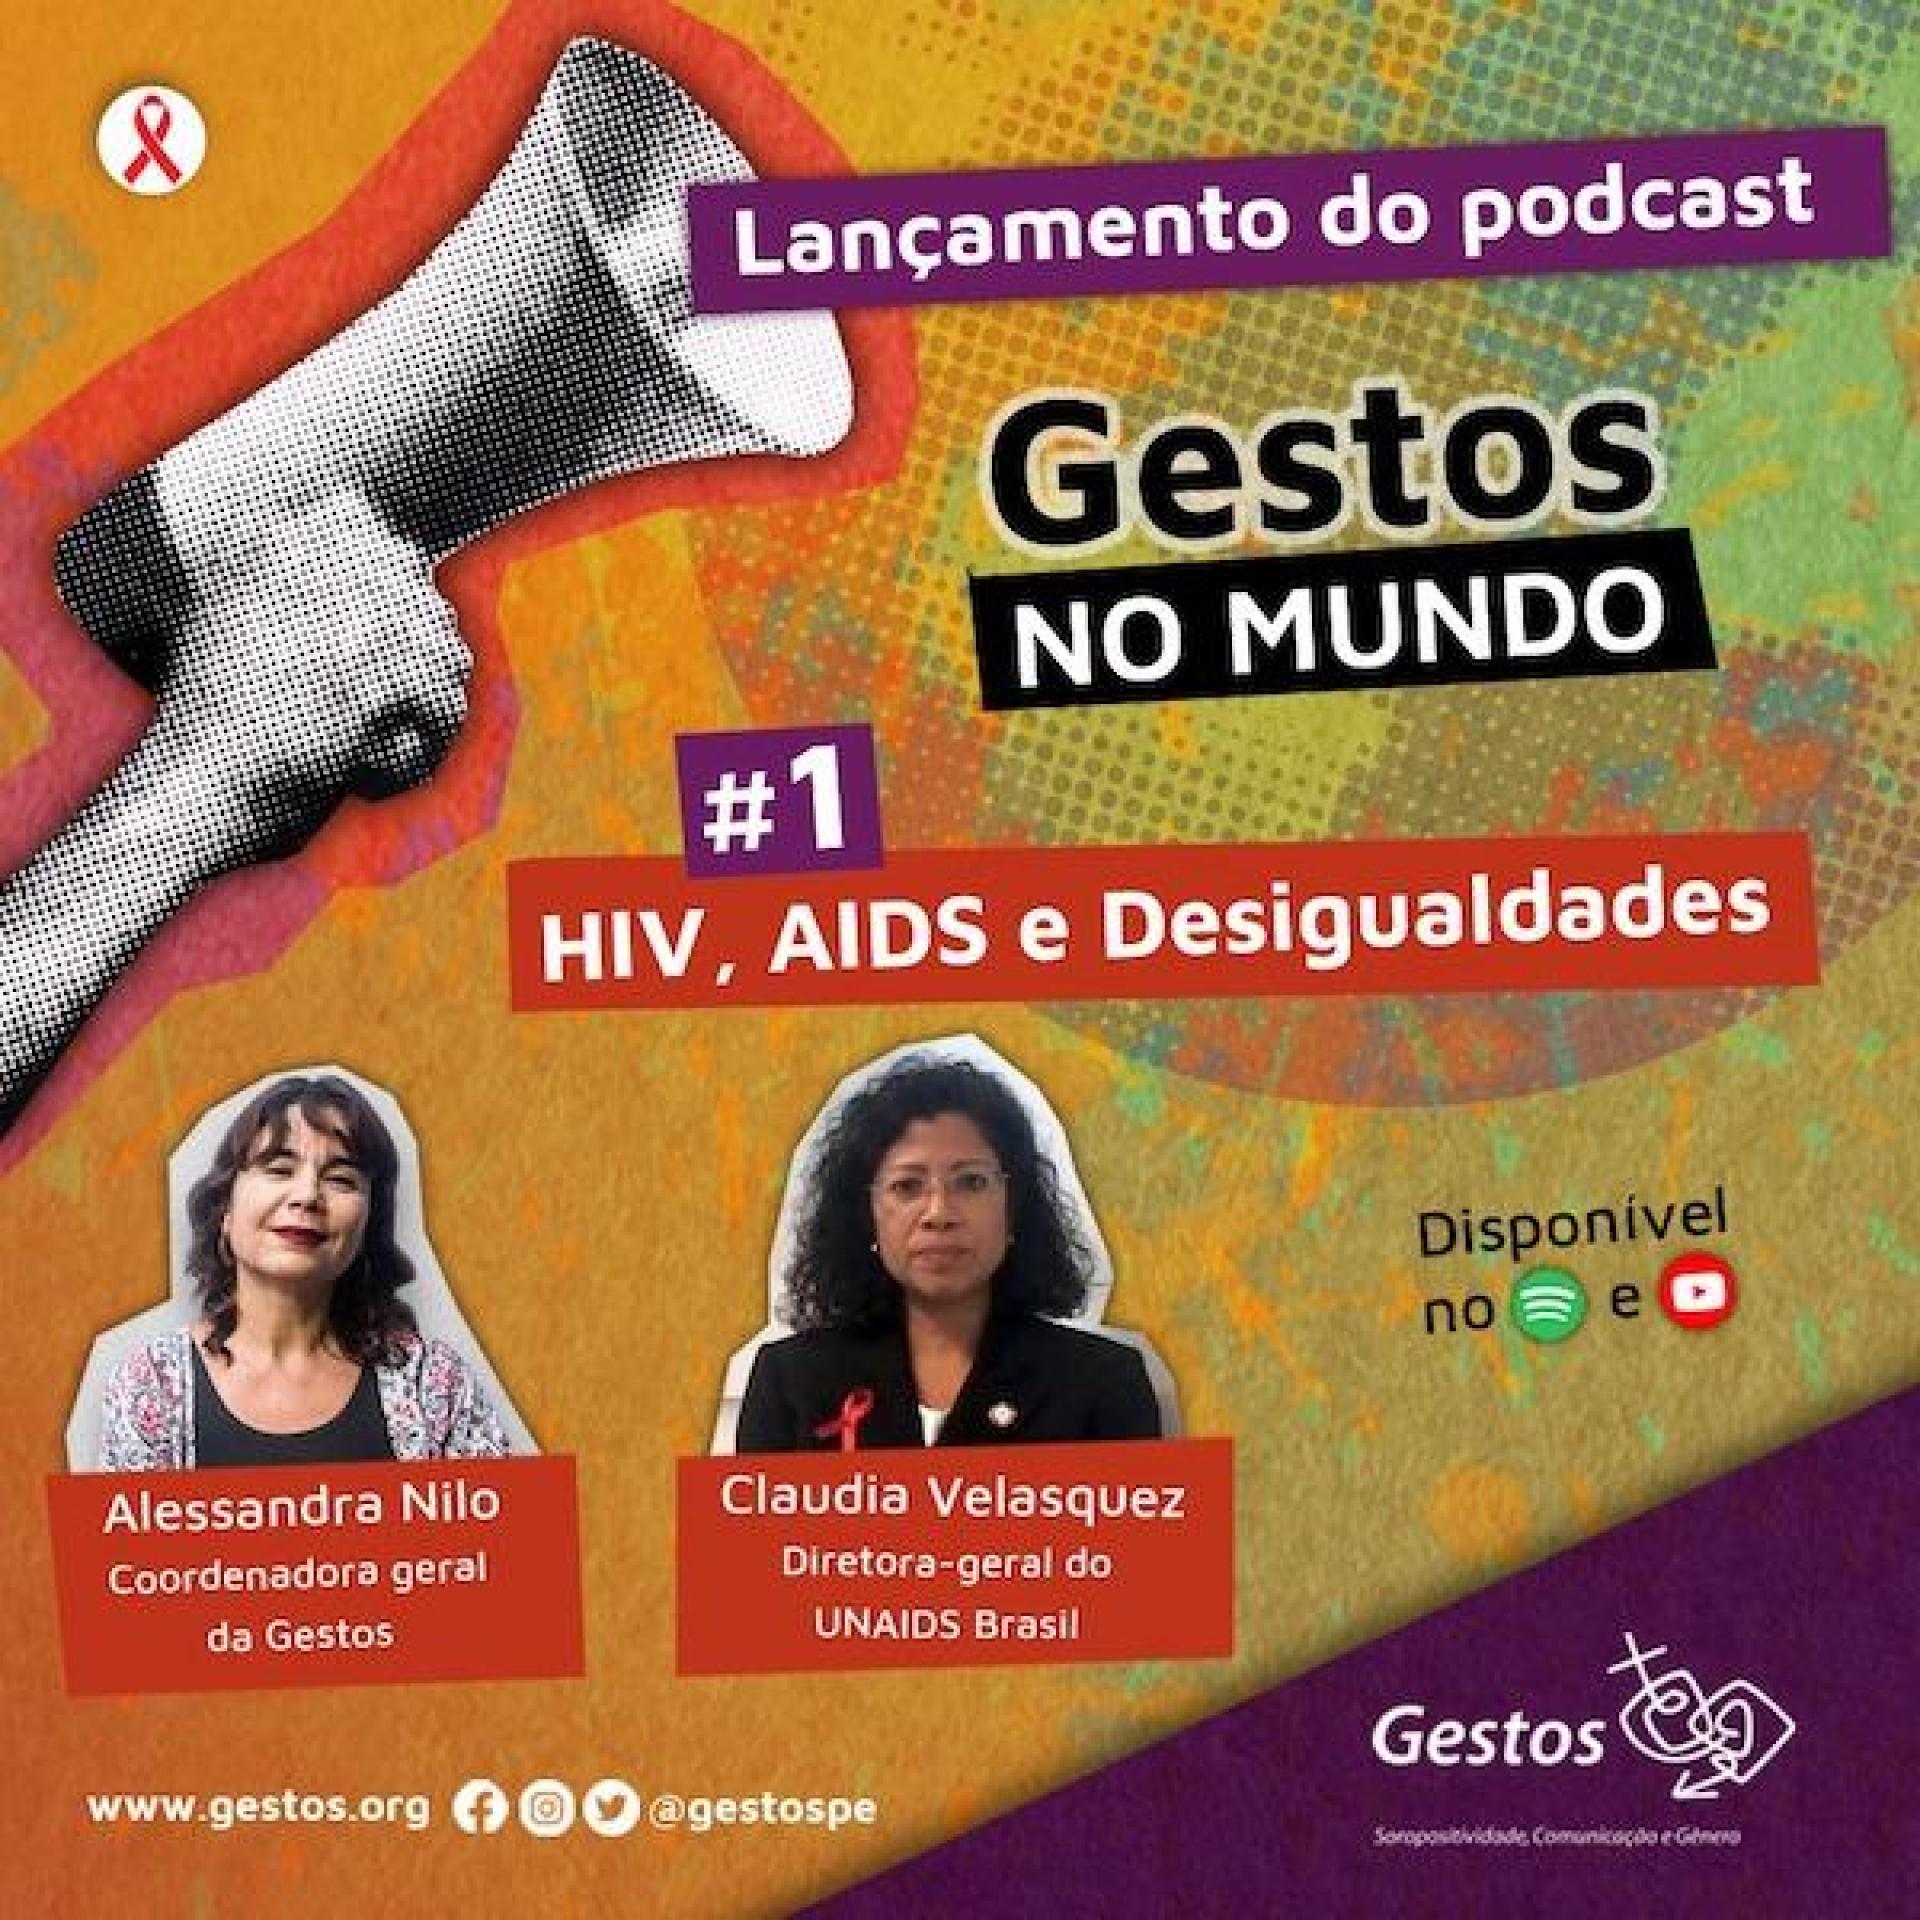 Gestos faz retrospectiva dos 40 anos da luta contra a AIDS em podcast